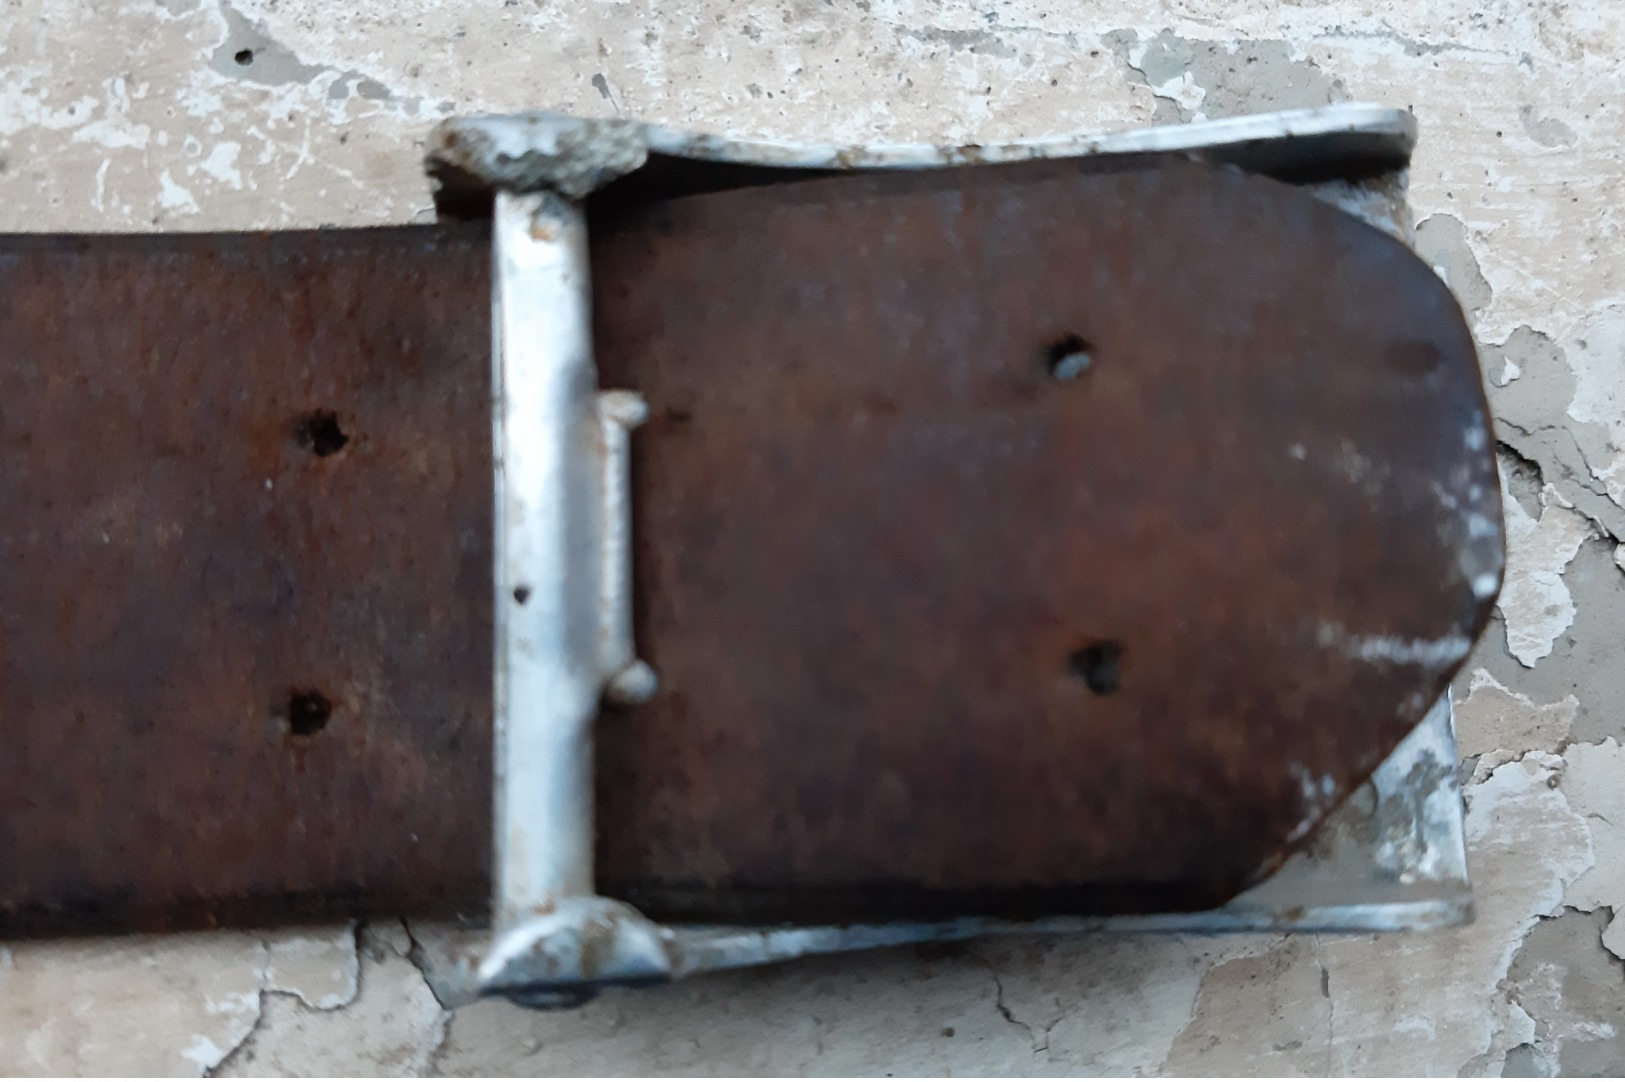 Cinturone Tedesco Nazista Per HITLERJUGEND (HJ) Con Fibbia In Alluminio Marcata (GERMANIA WW2) - Equipaggiamento